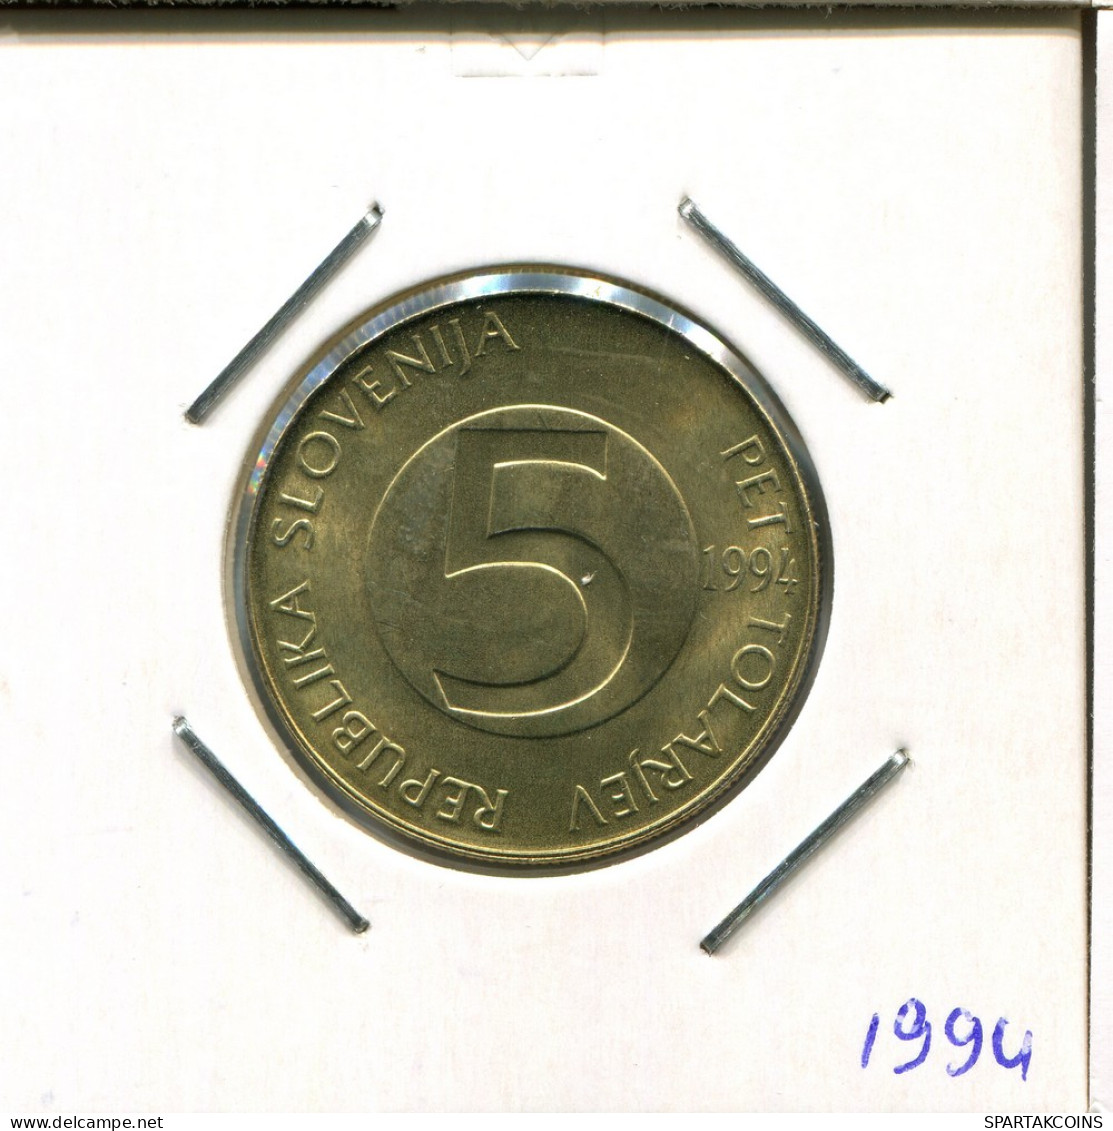 5 TOLARJEV 1994 SLOVENIA Coin #AR382.U - Slovénie